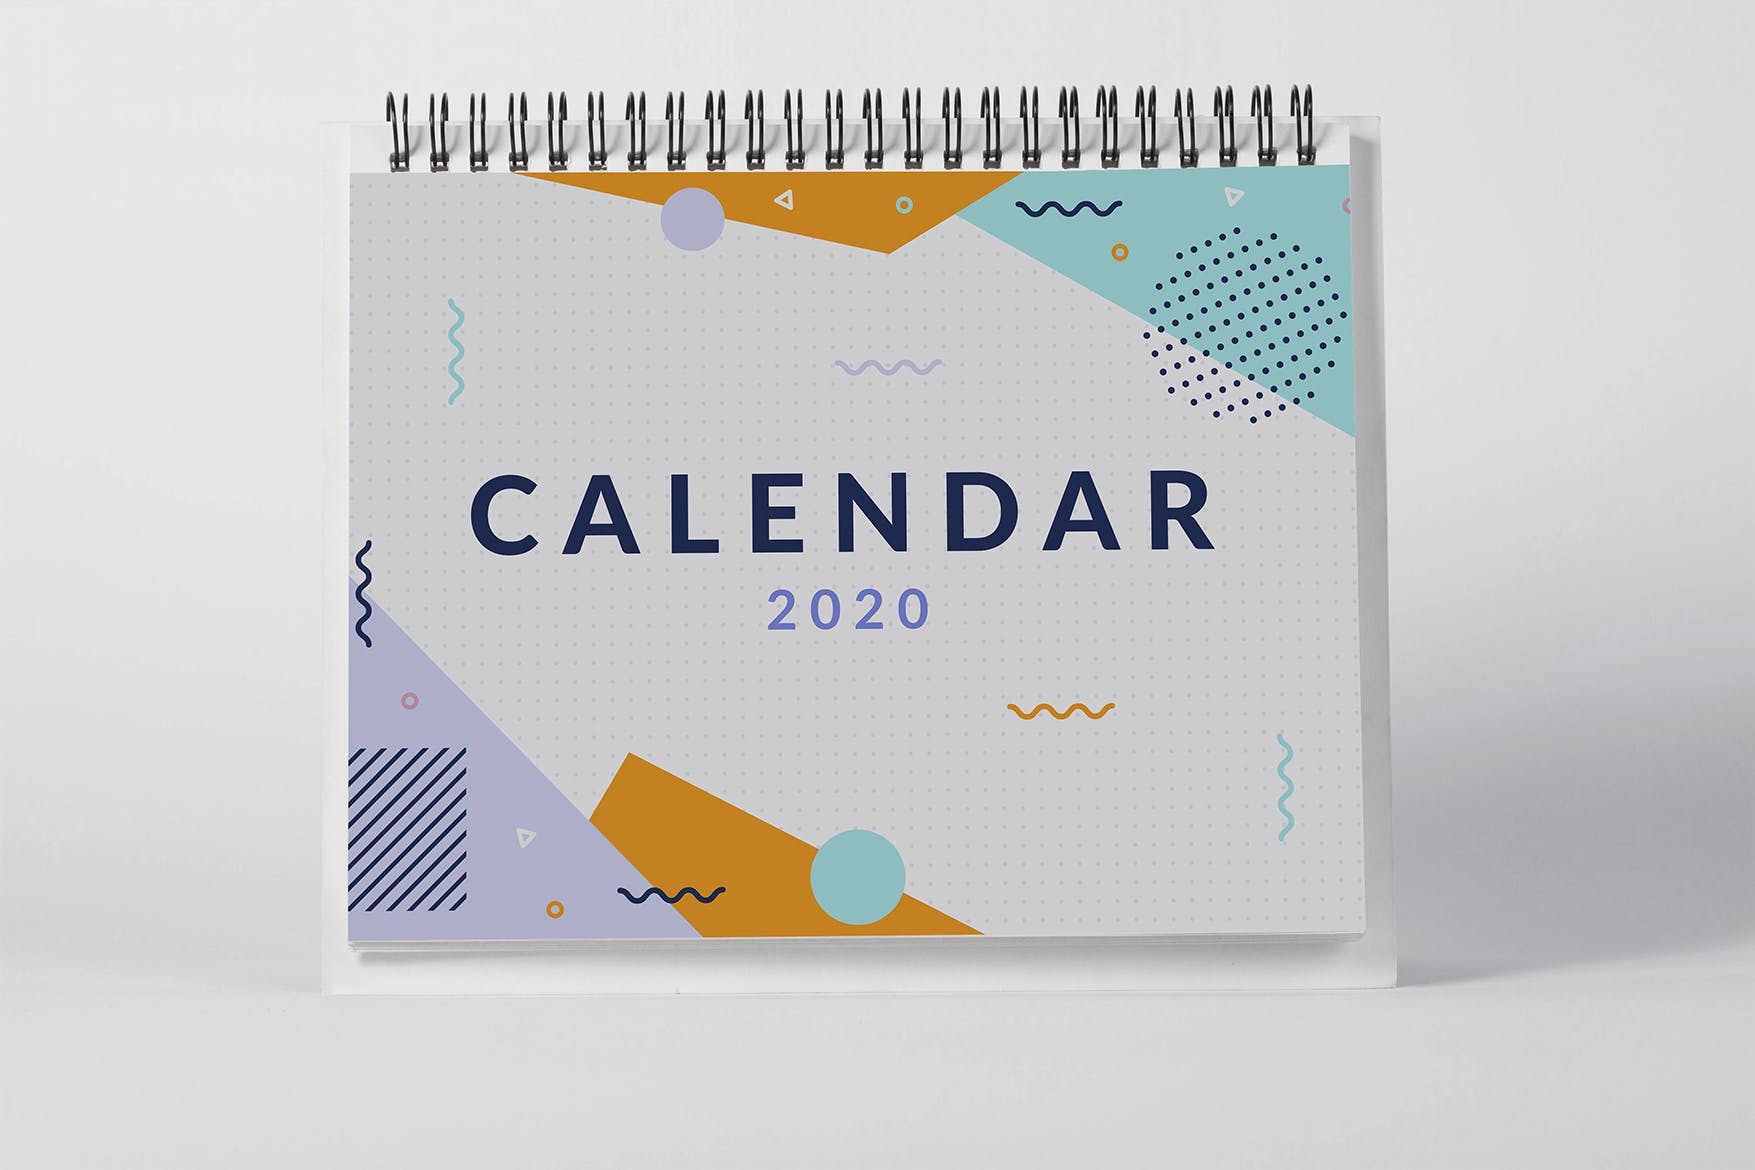 2020年桌面日历设计样机第一素材精选模板 2020 Desktop Calendar Mock Up插图(1)